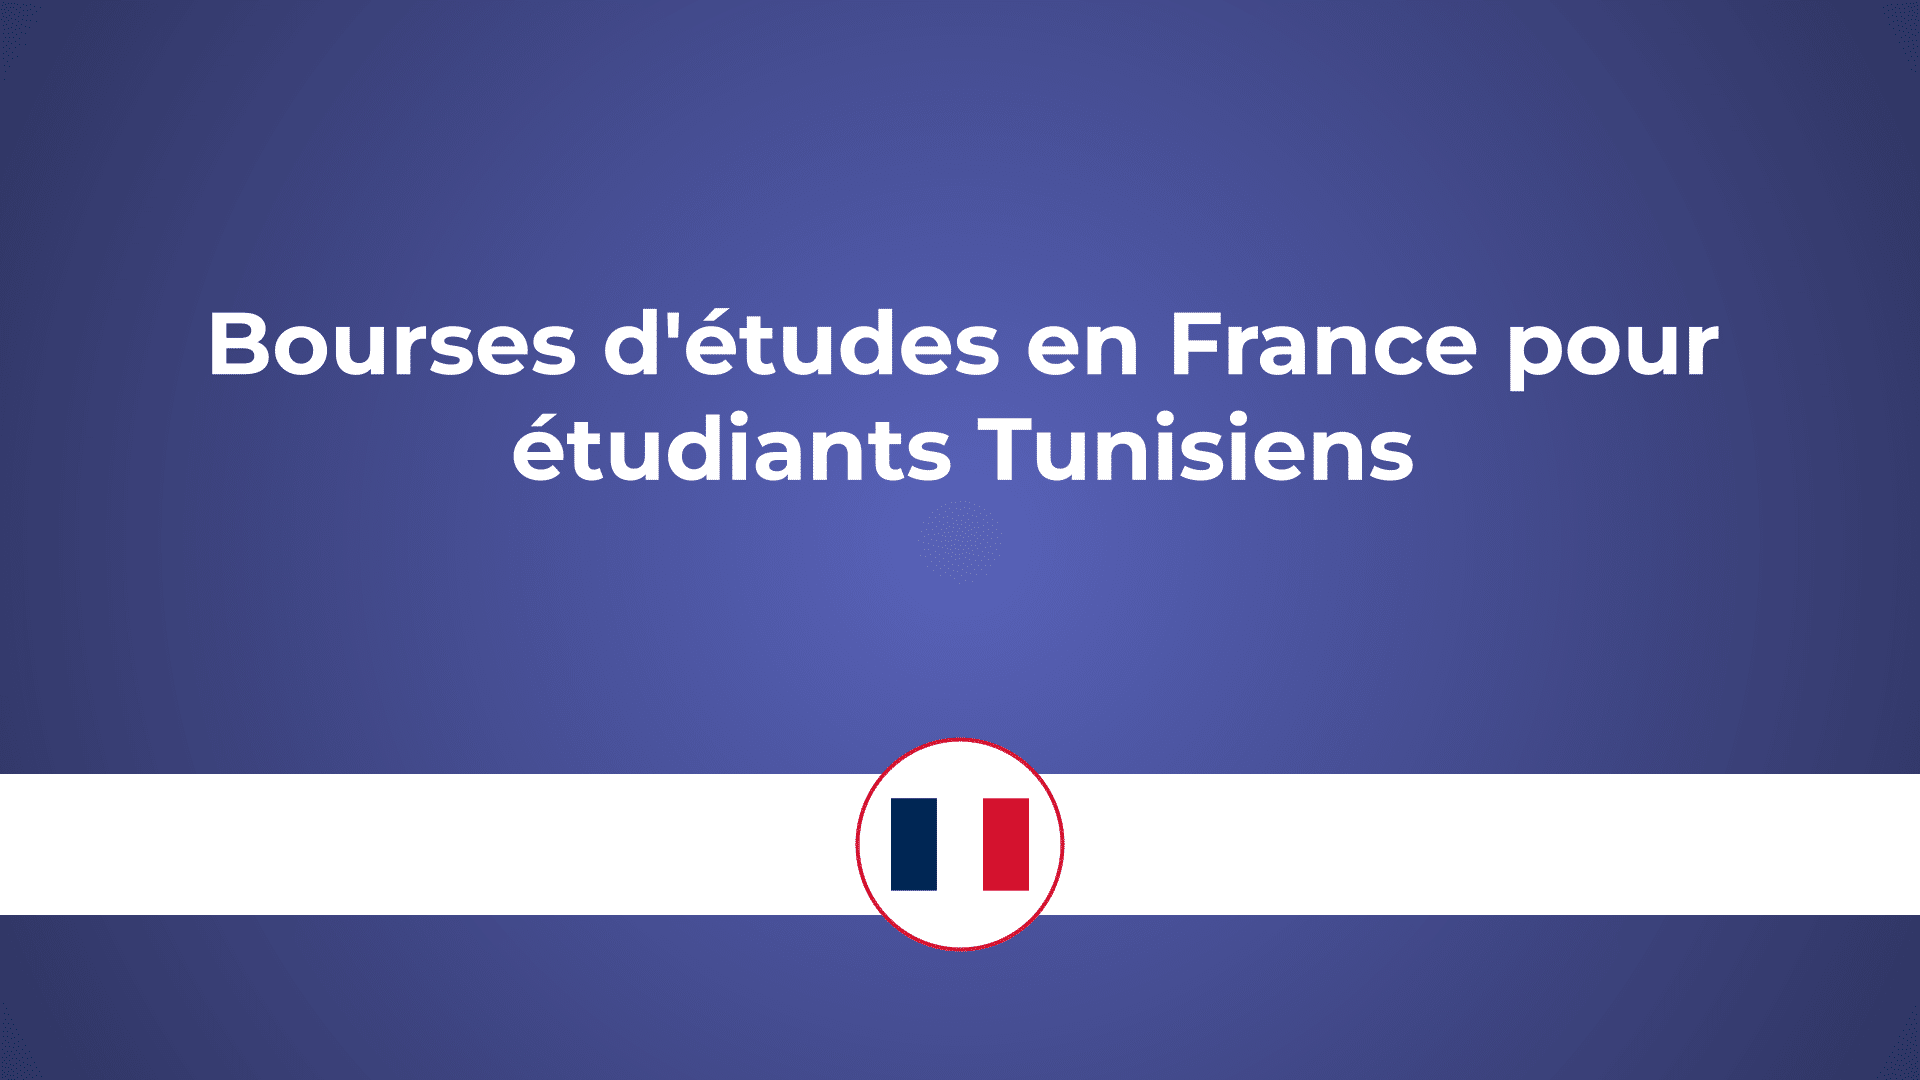 Bourses d'études en France pour étudiants Tunisiens